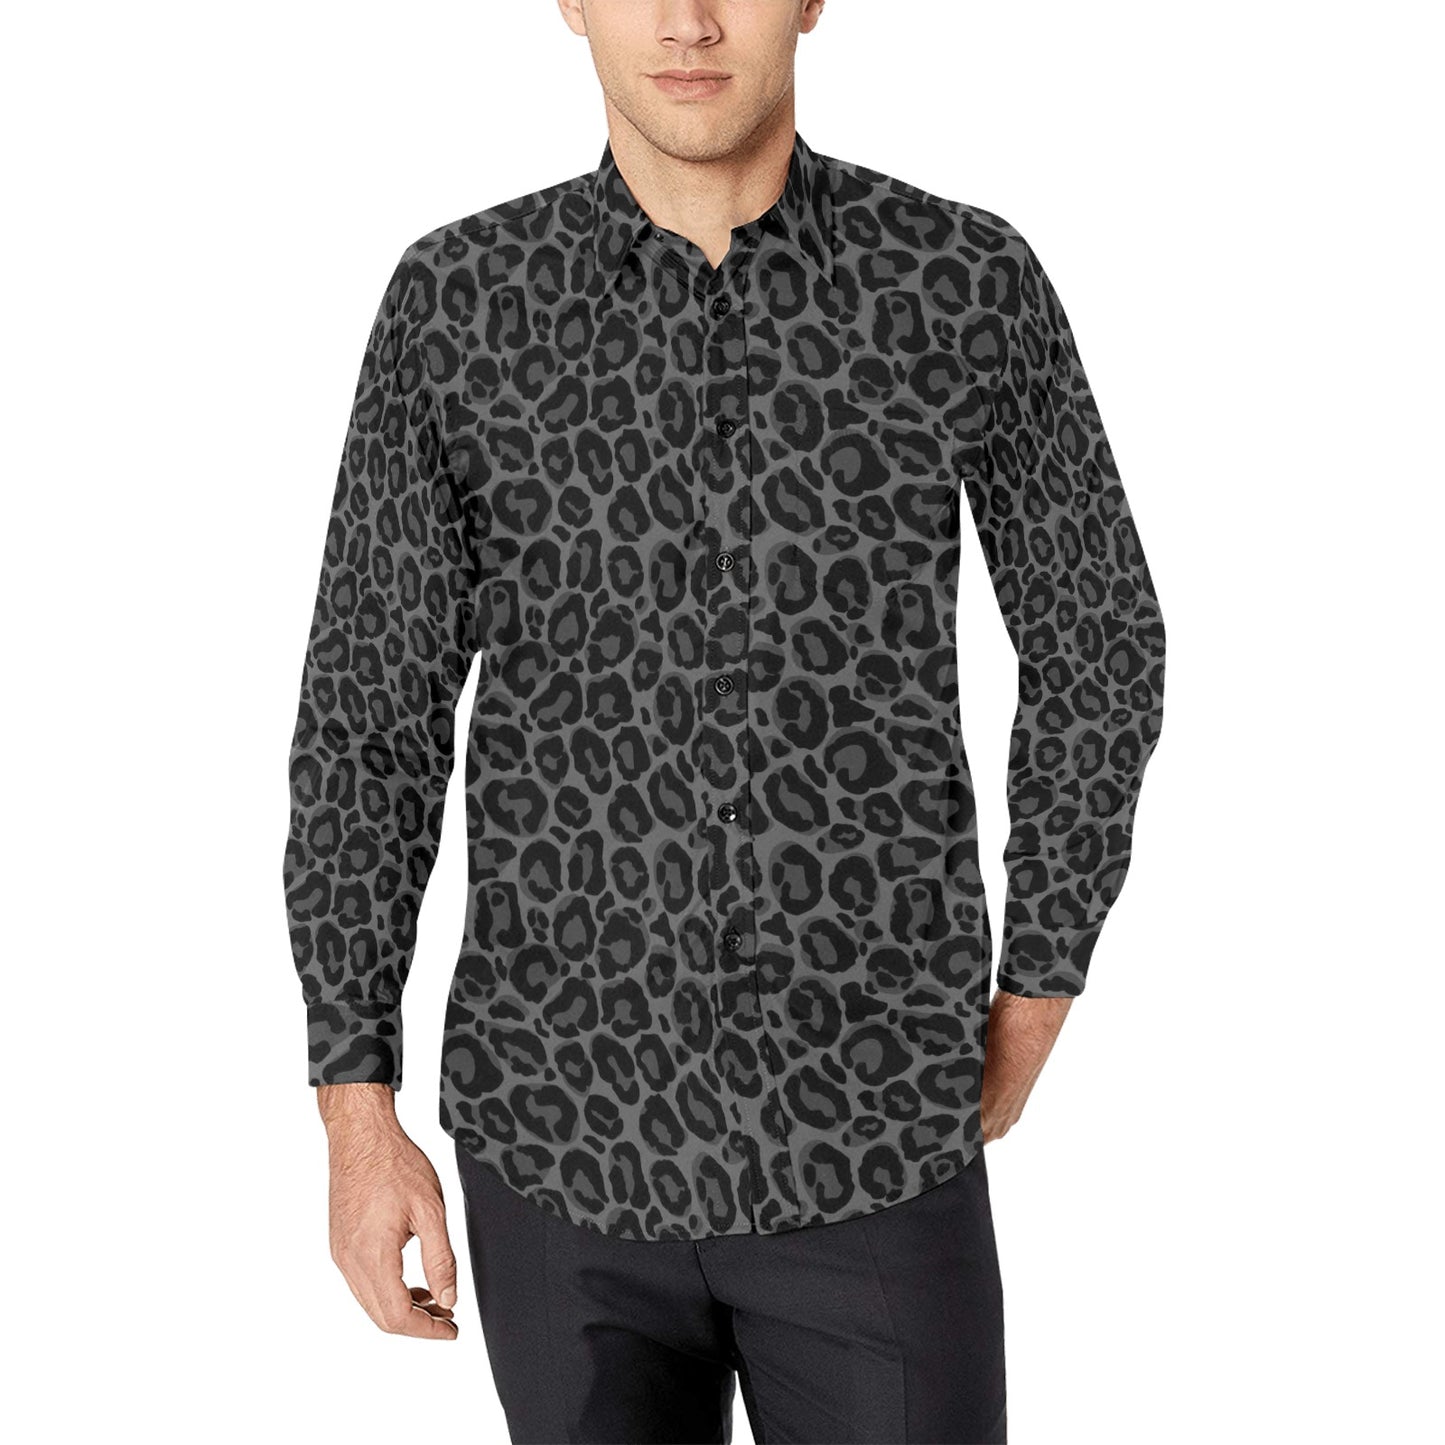 Black Leopard Men Button Up Shirt, Long Sleeve cheetah Animals Print Grey Buttoned Collar Dress Shirt with Chest Pocket